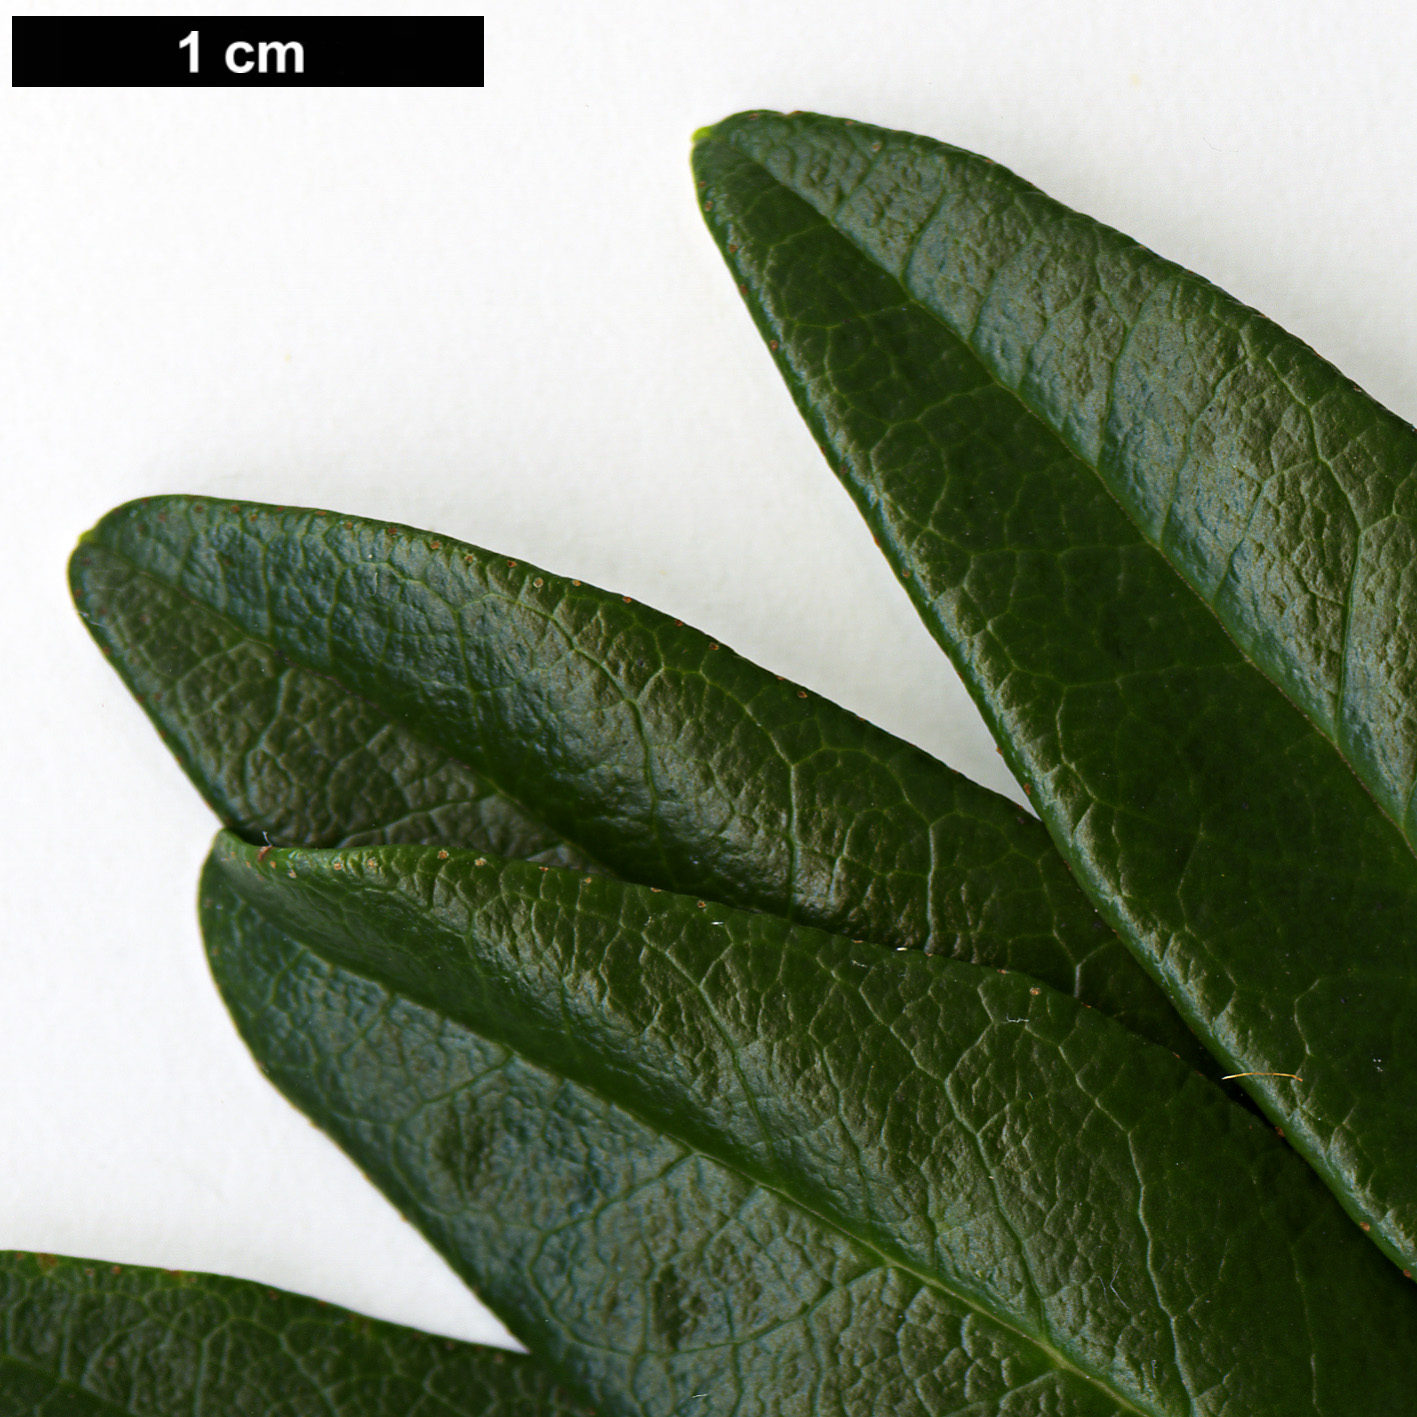 High resolution image: Family: Ericaceae - Genus: Rhododendron - Taxon: ferrugineum